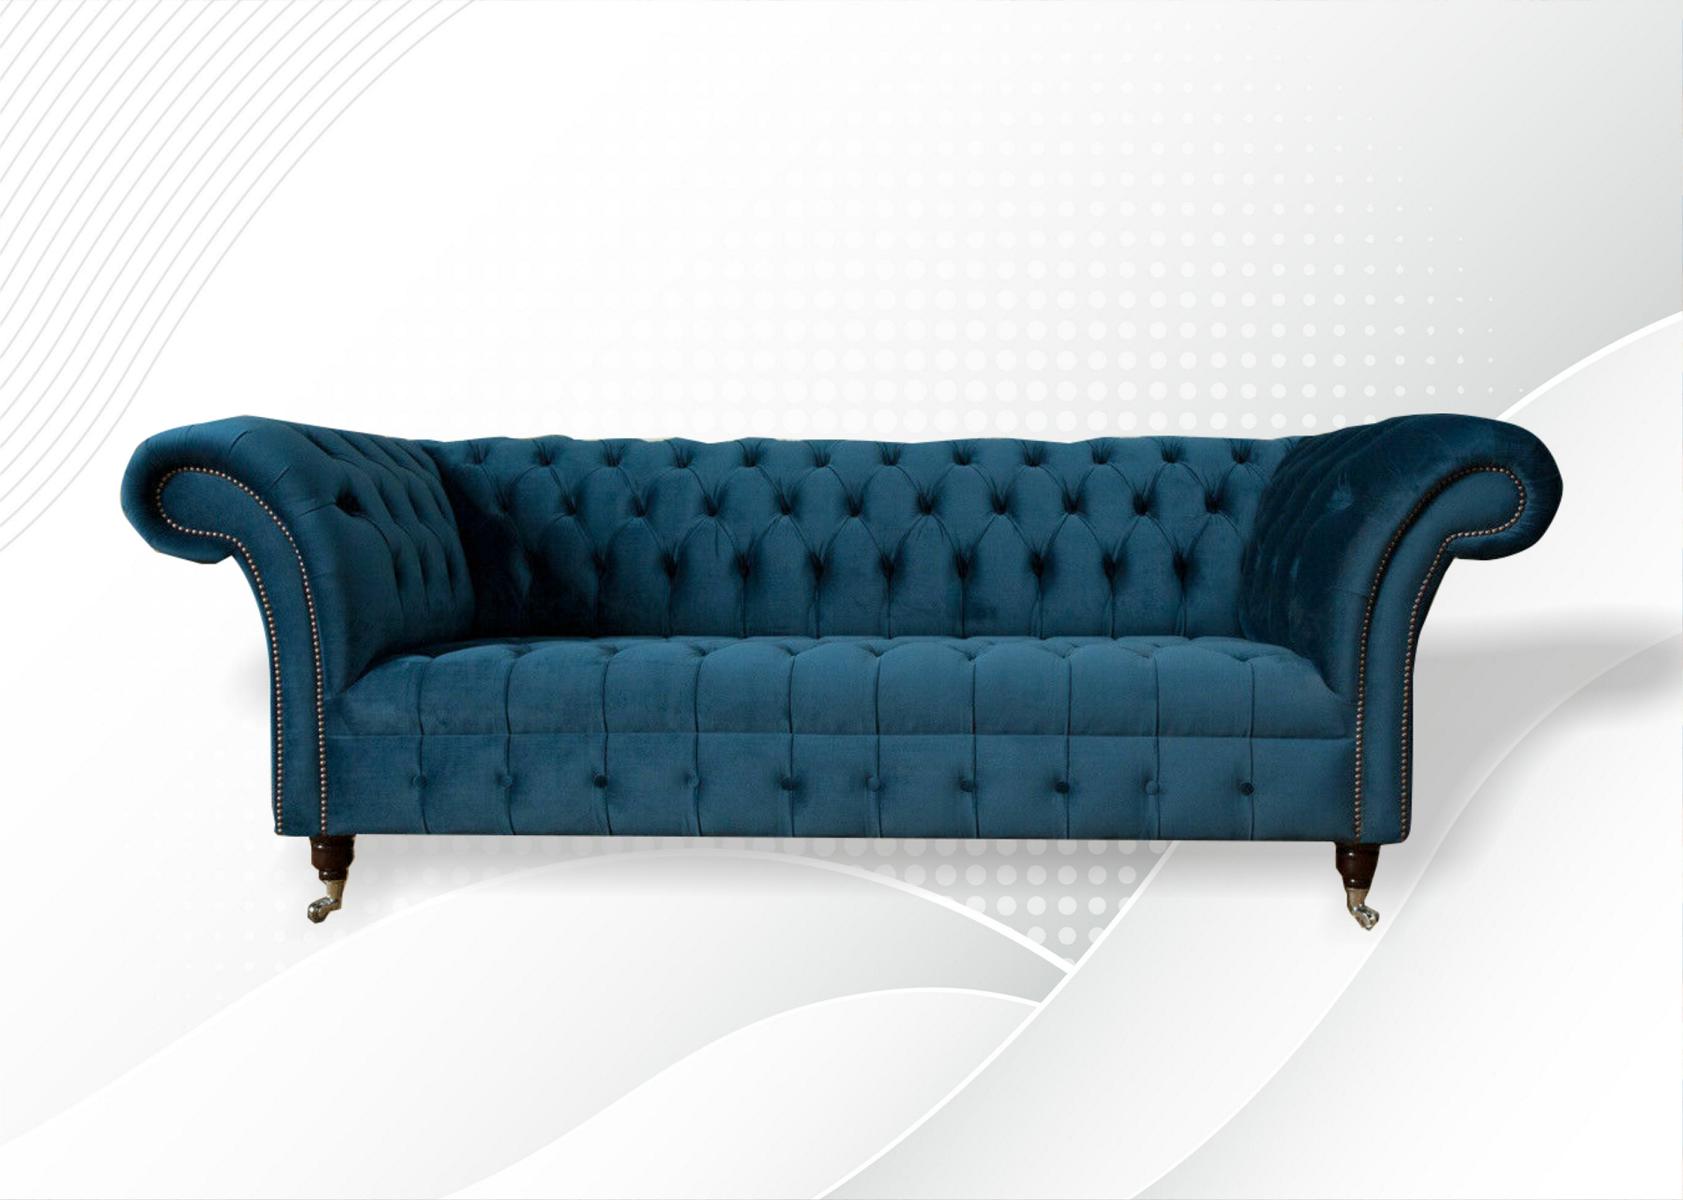 xxl big Sofa 3 Sitzer Couch Chesterfield Polster Sitz Garnitur Stoff Textil